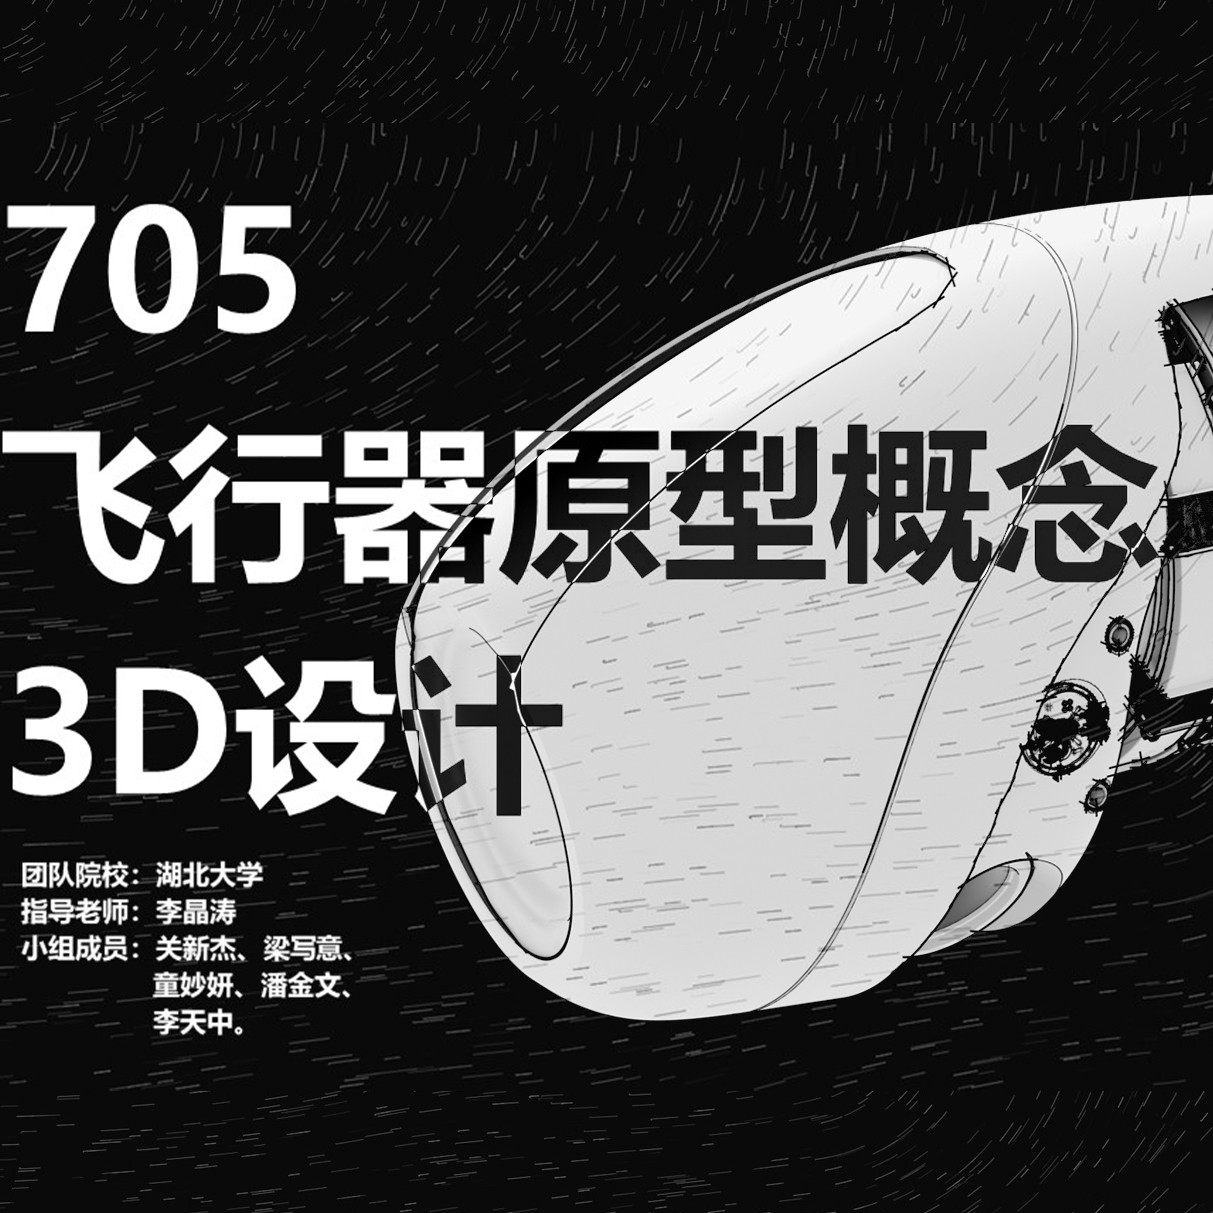 “705” 飞行器原型概念3D设计